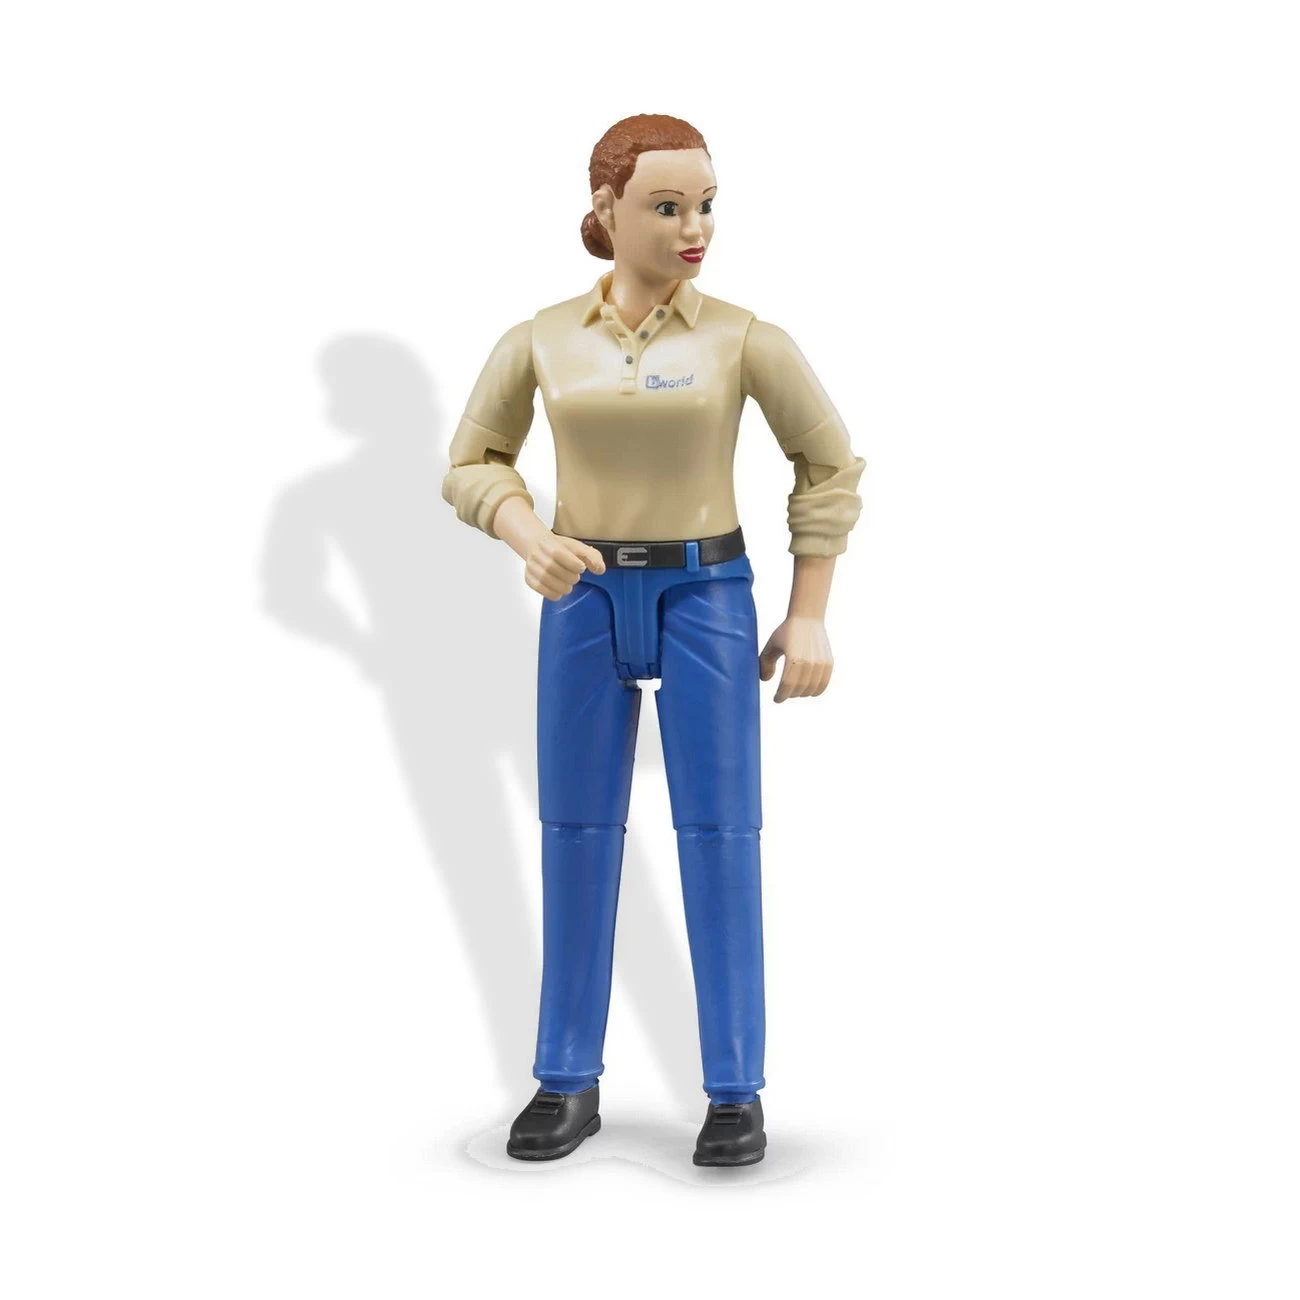 bworld 60408 - Frau mit hellem Hauttyp und blauer Hose